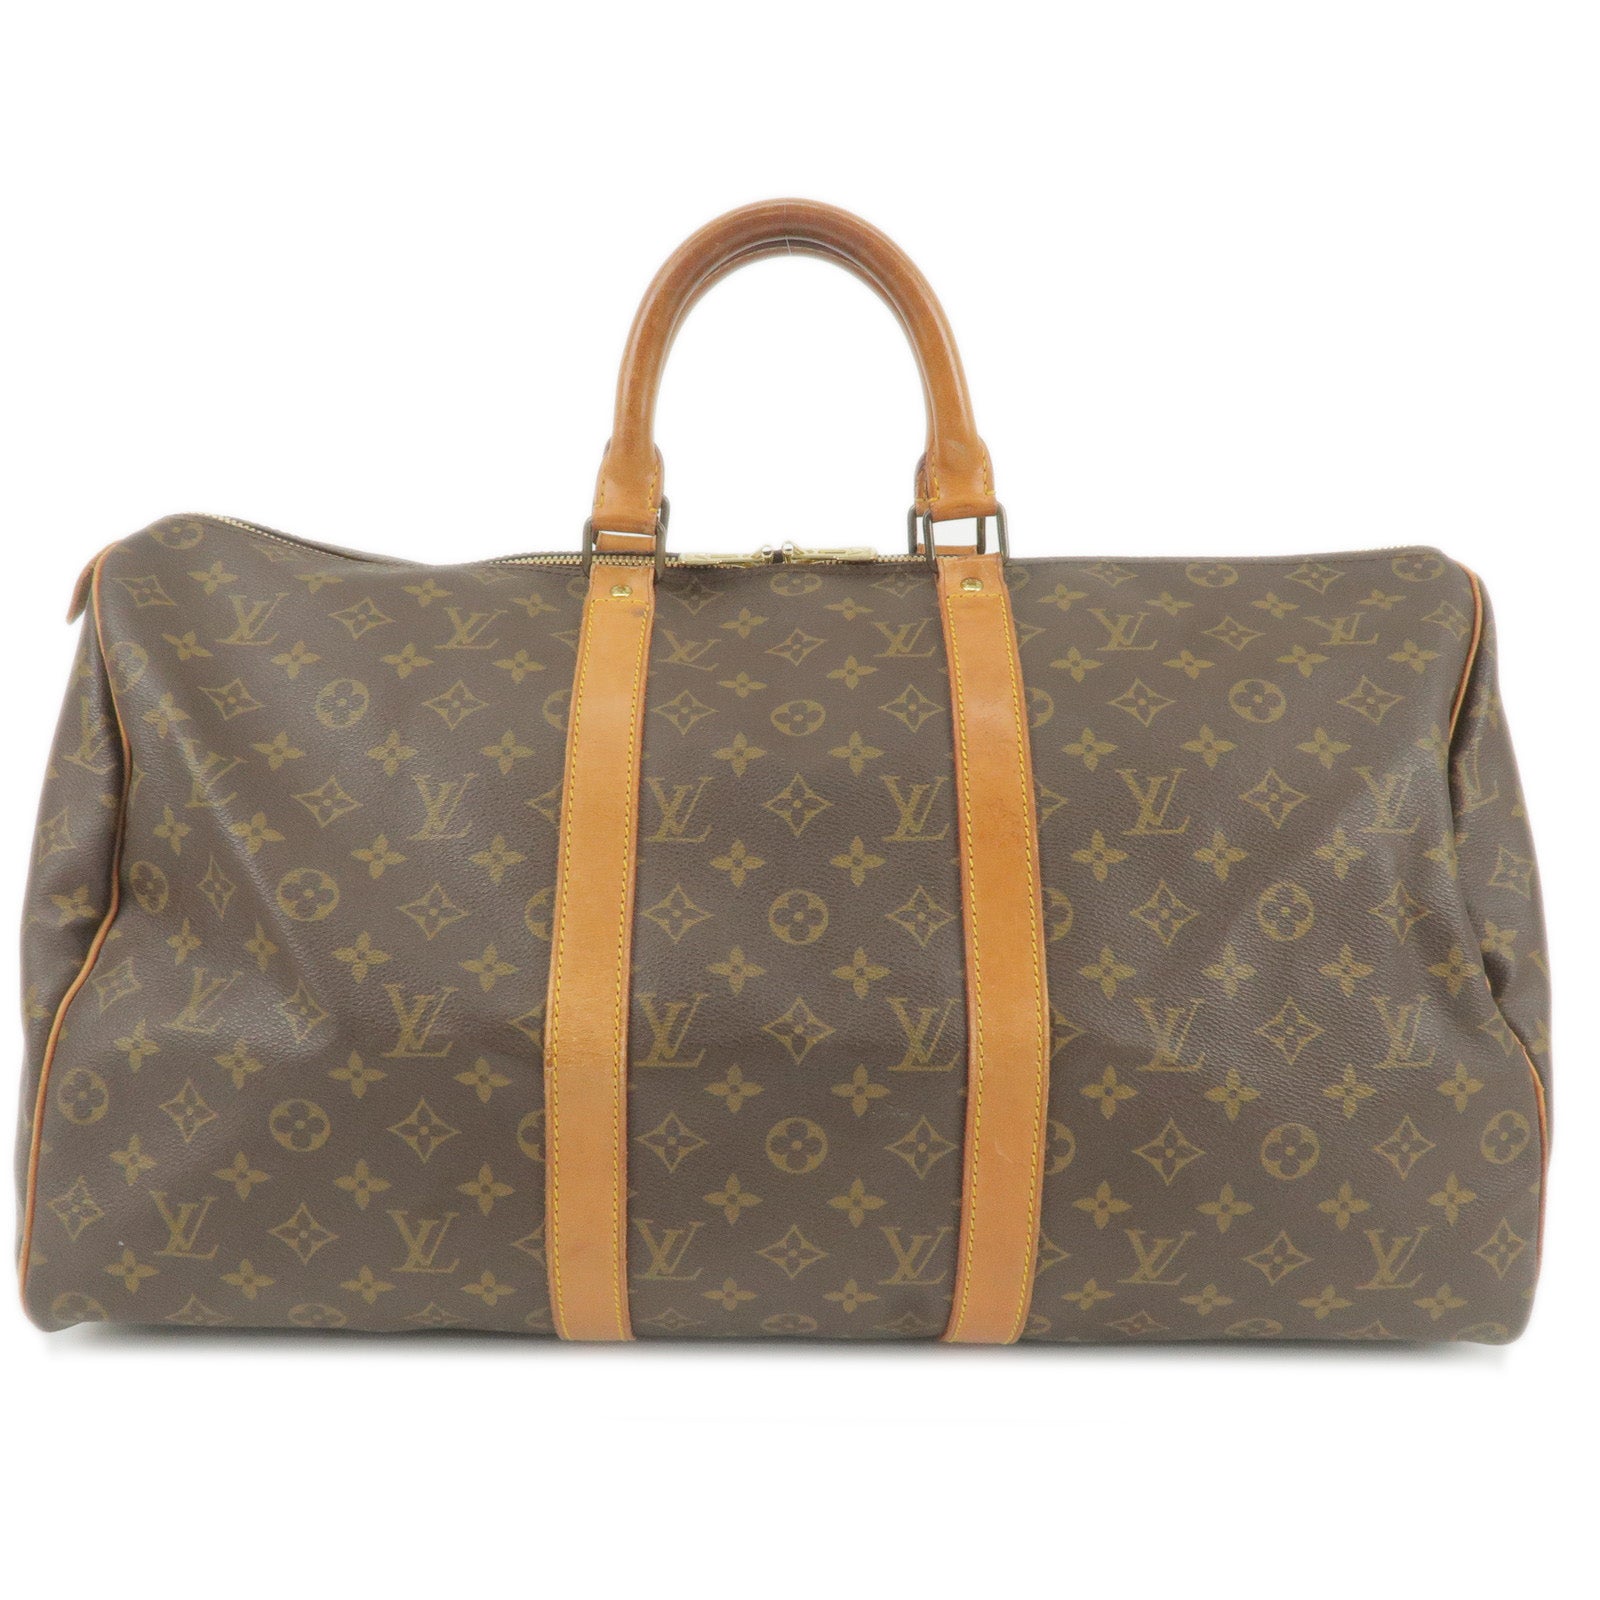 Louis-Vuitton-Monogram-Keep-All-50-Boston-Bag-Old-Style-M41426